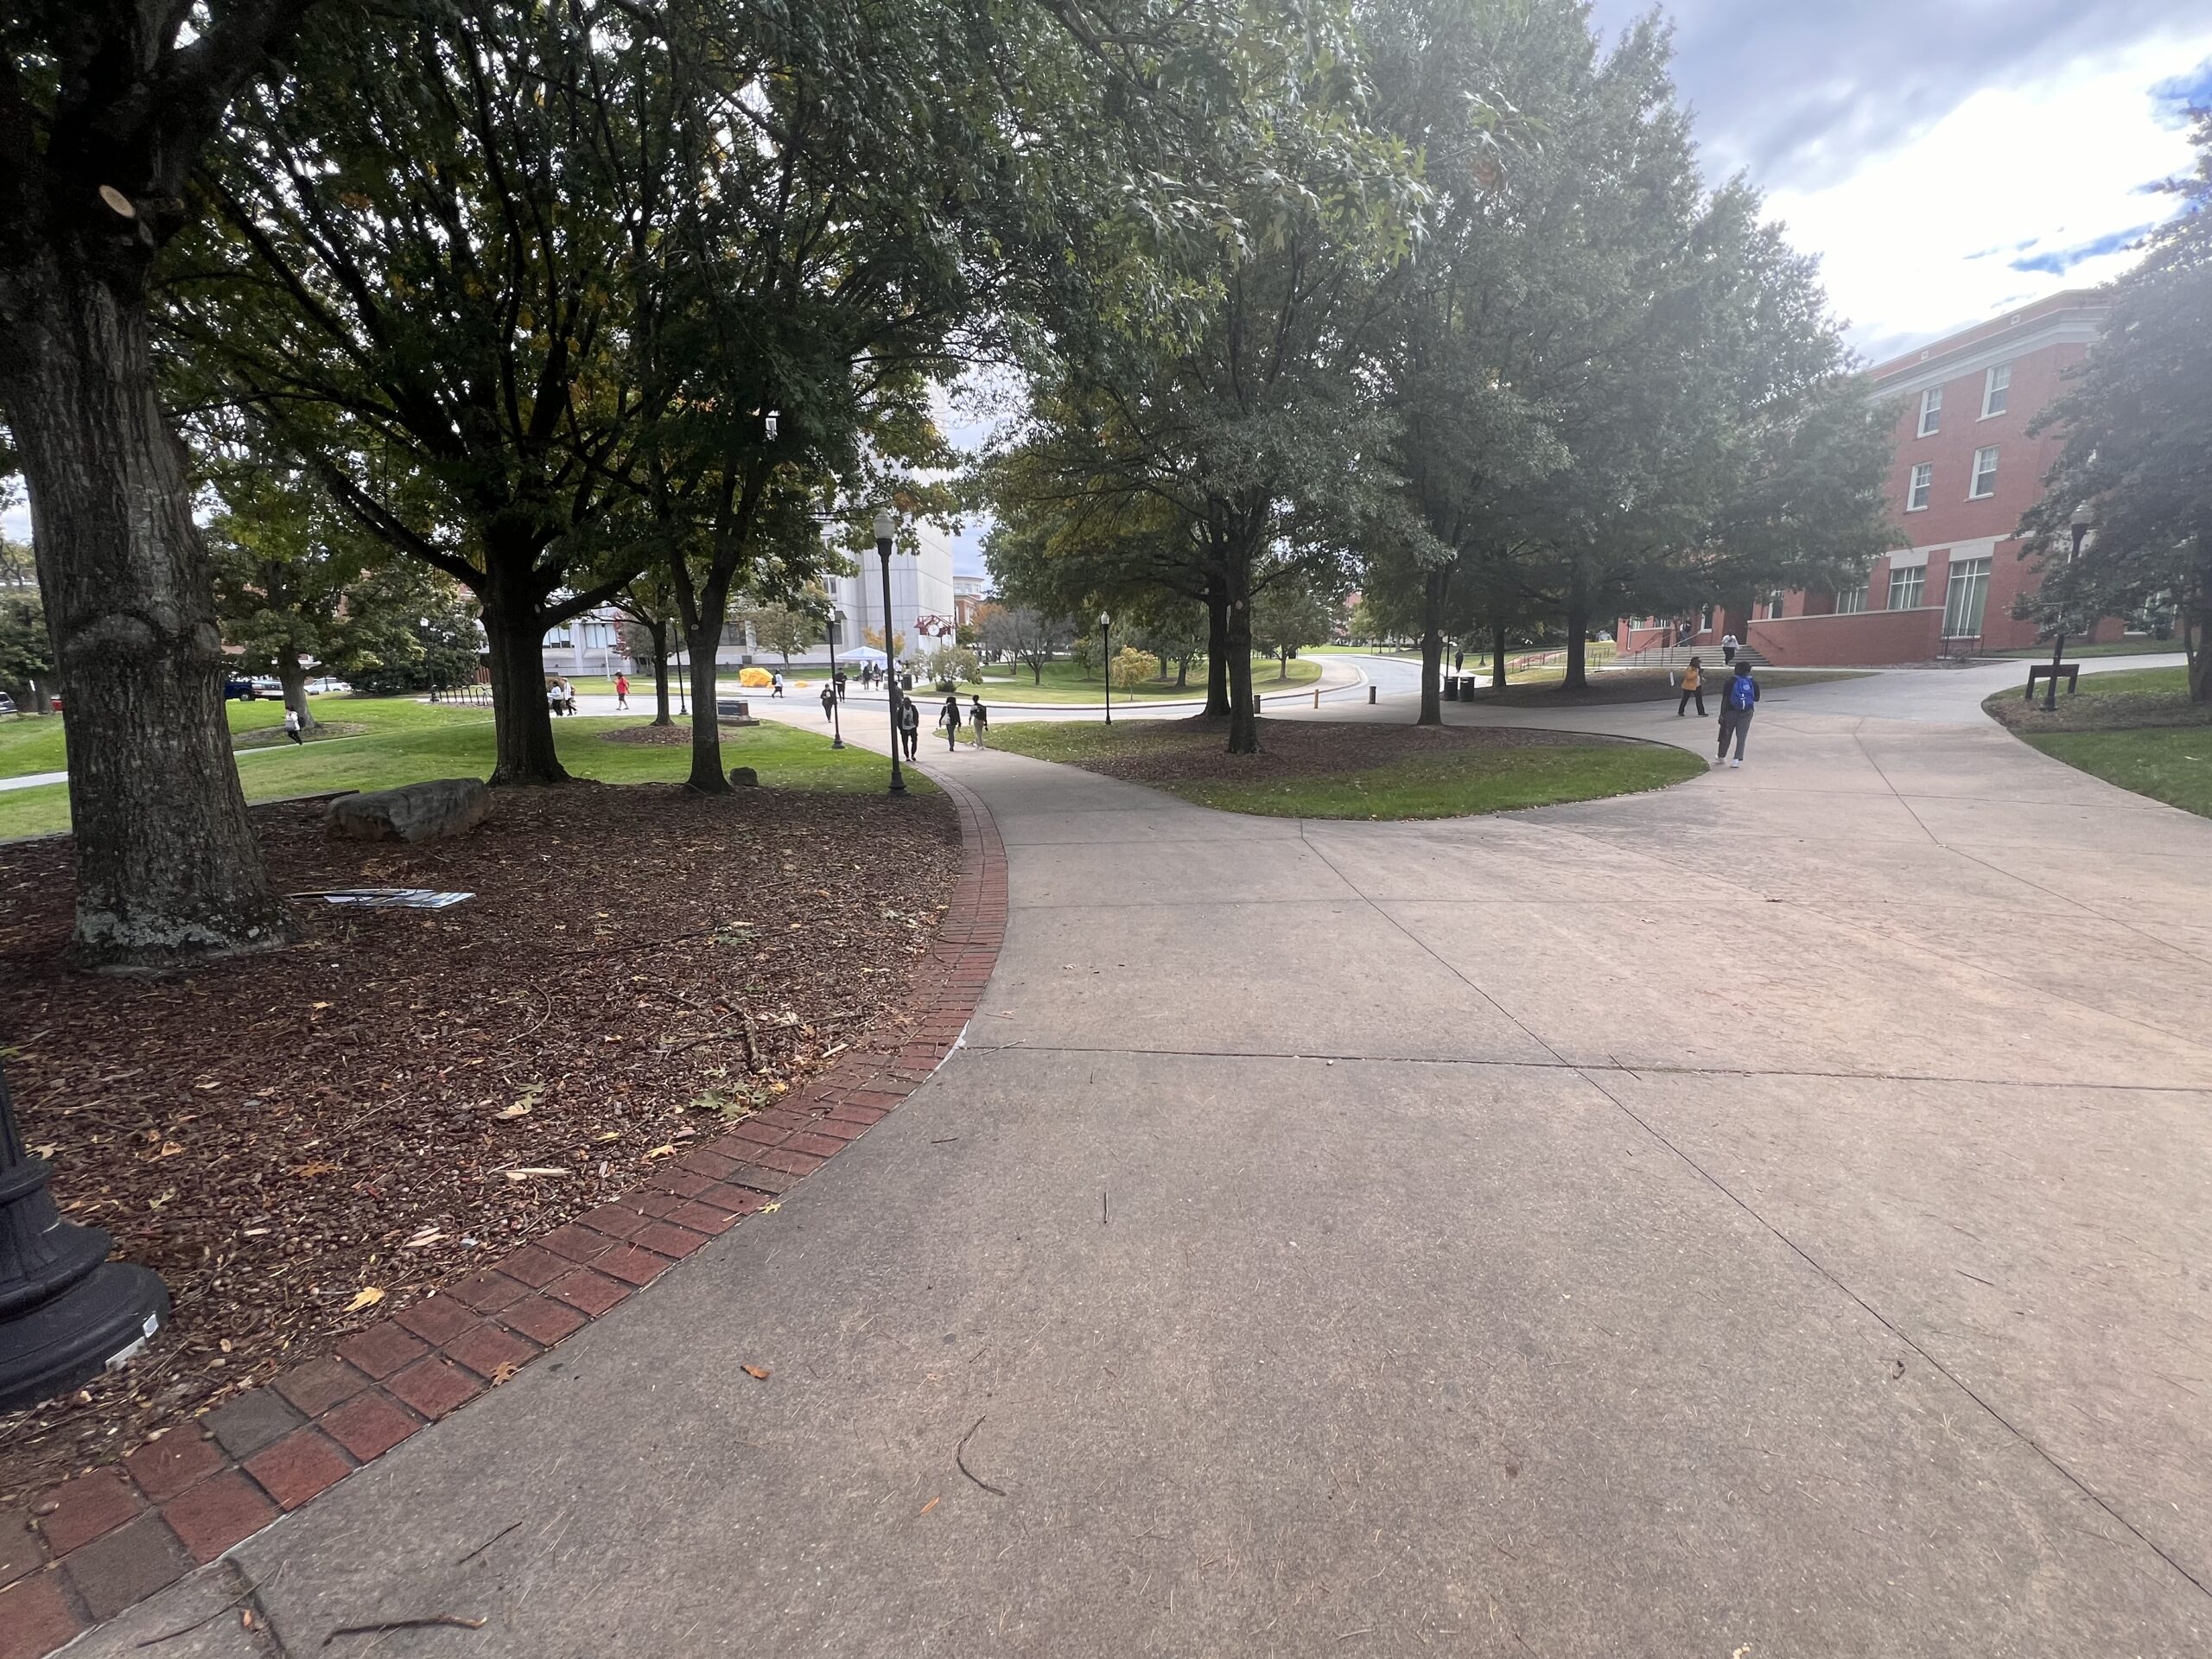 Students walk along a path at UNCG campus.